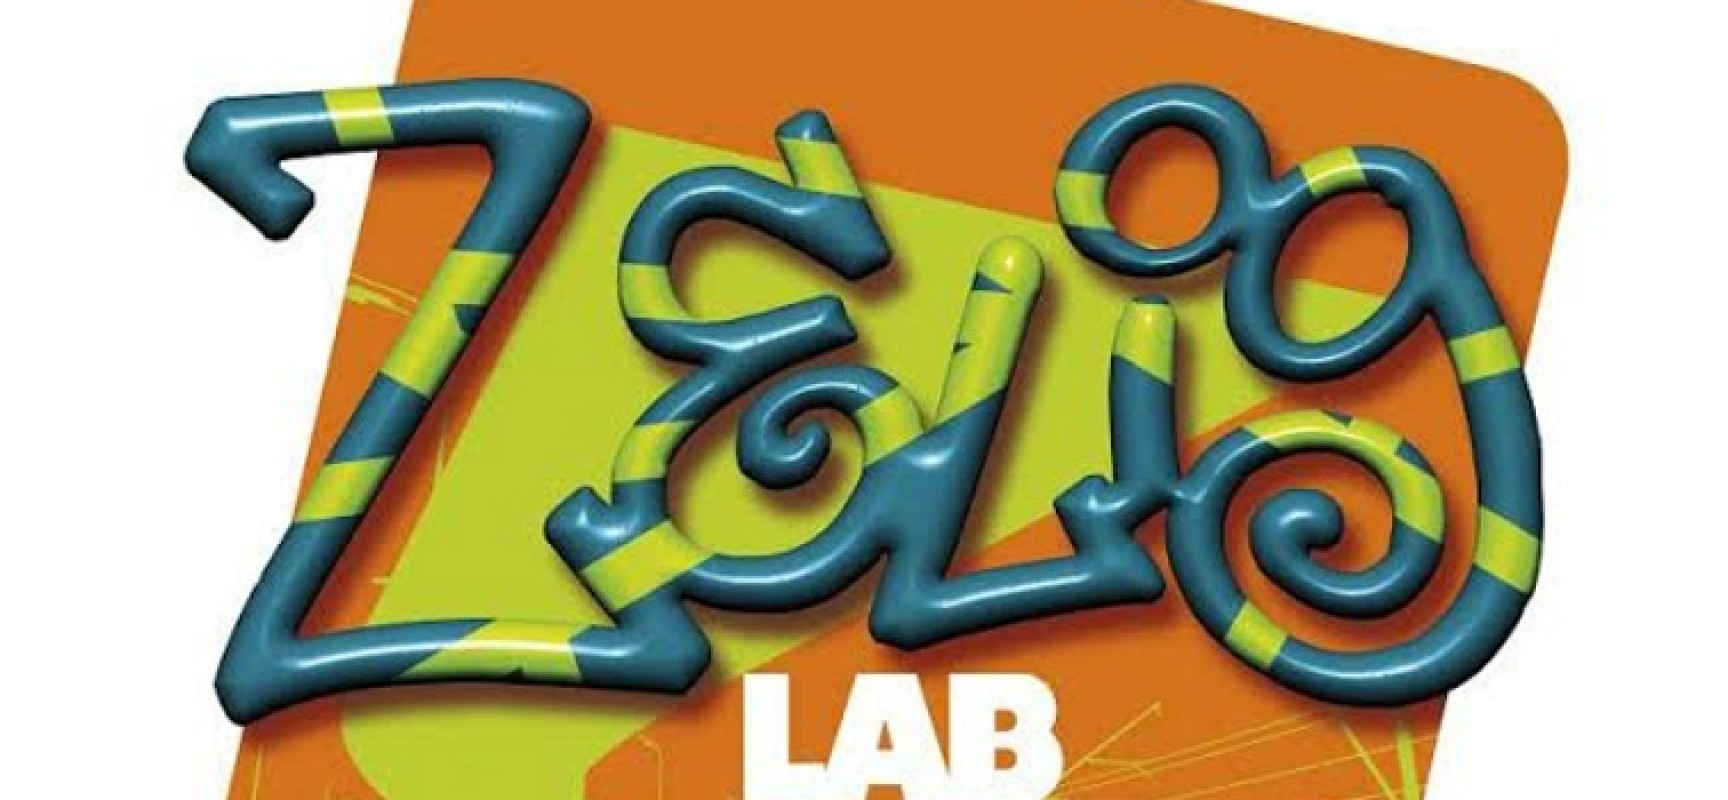 Open Source inaugura la nuova stagione della rassegna comica di Zelig Lab